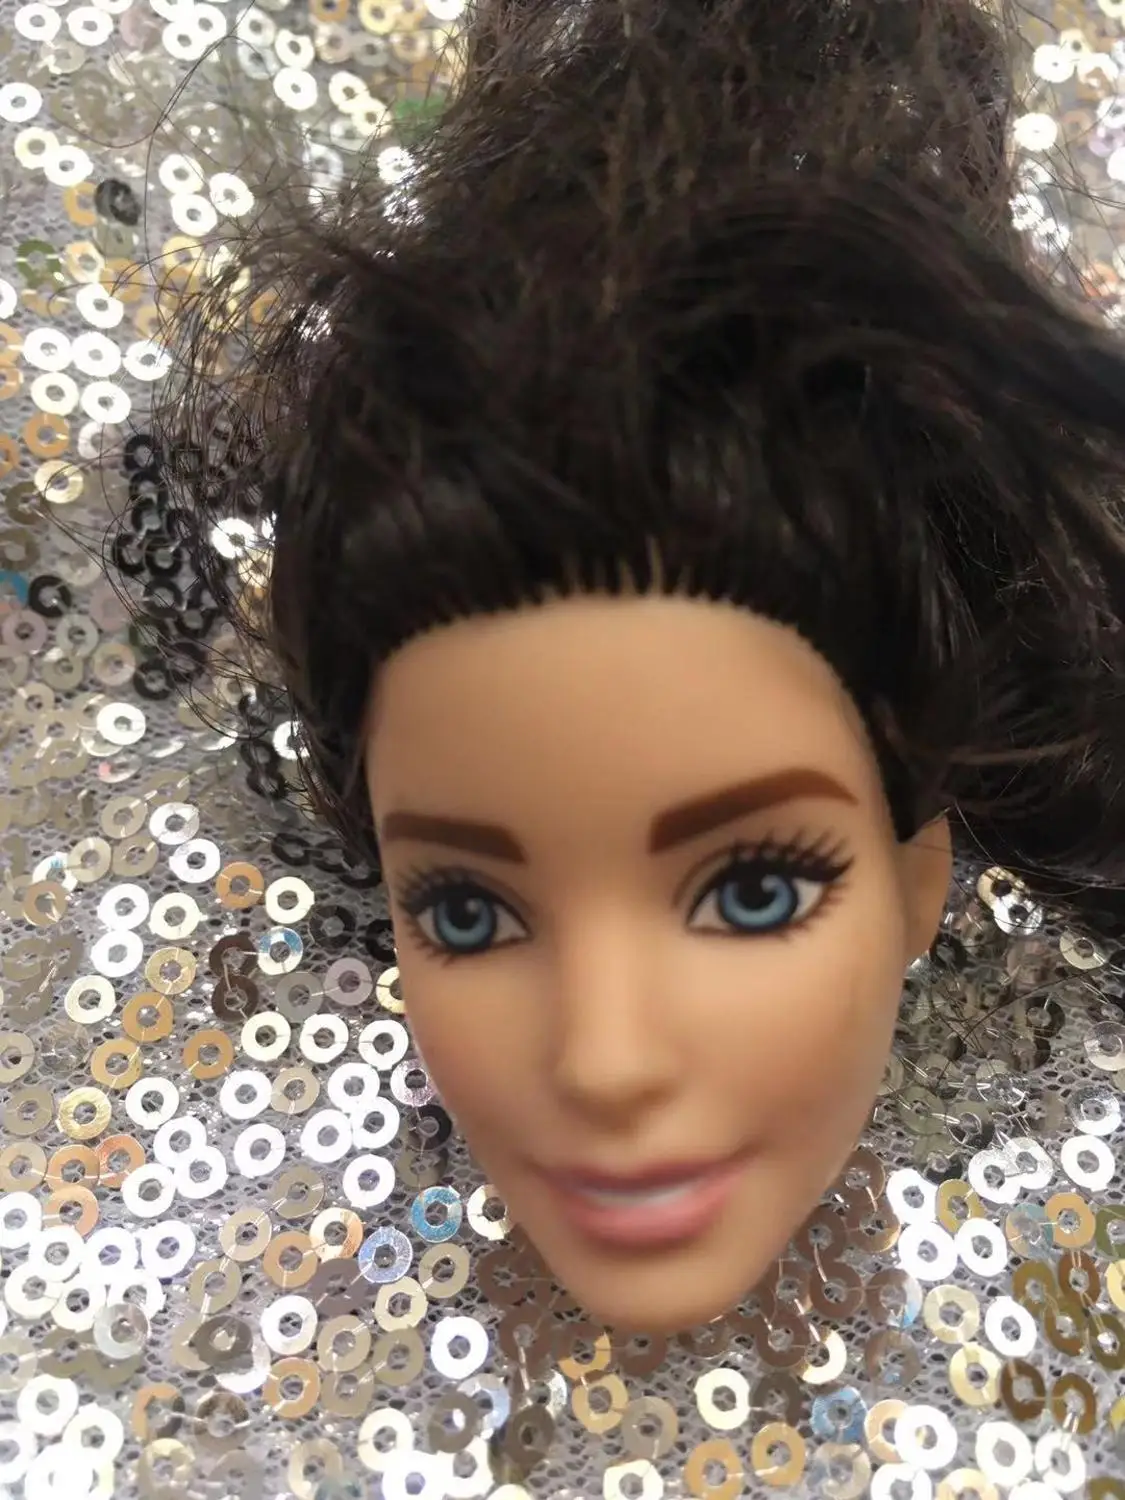 Хороший макияж редкая Ограниченная Коллекция кукла голова черная леди белая кожа принцесса Азия лицо аксессуары для кукол игрушки голова 1/6 кукла часть - Цвет: as pics